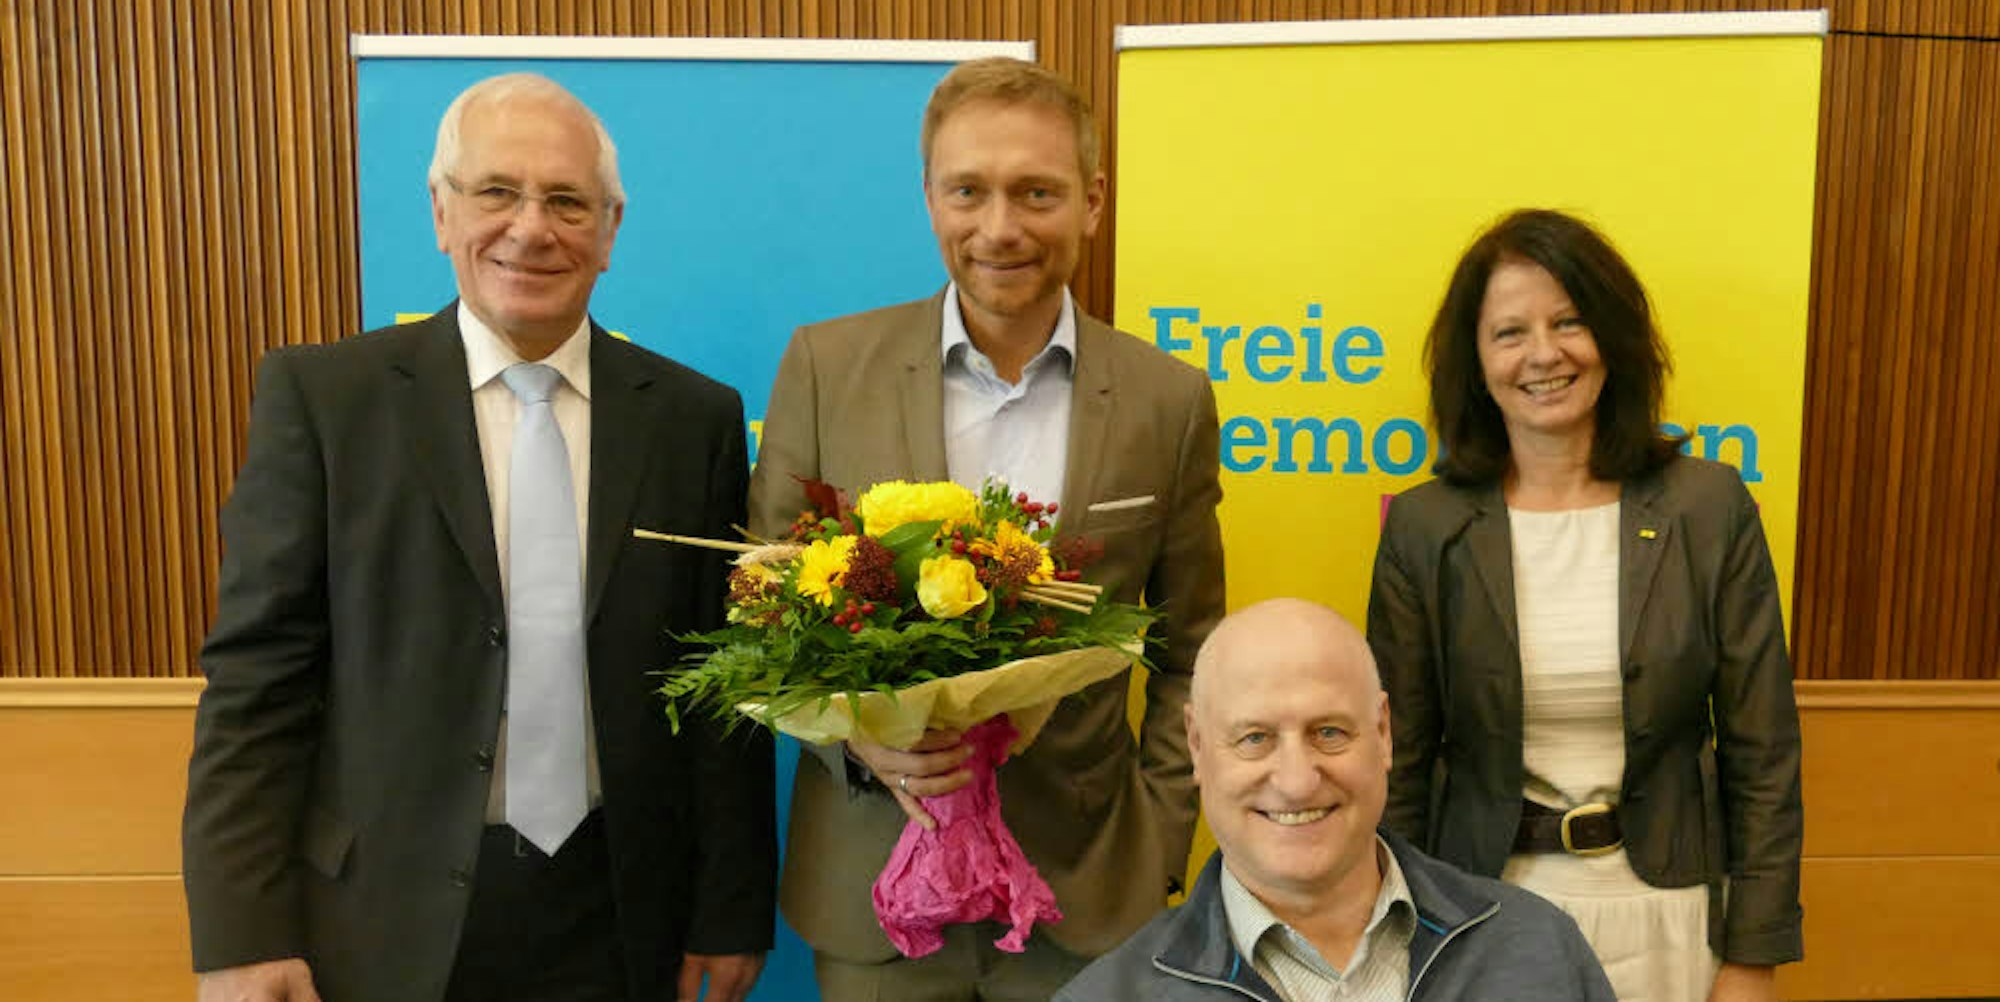 Kreisvorsitzender Hermann Küsgen, Bundestagskandidat Christian Lindner, Landtagskandidaten Anita Rick-Blunck und Lothar Esser (v .l.) nach der Wahl im Kreishaus.